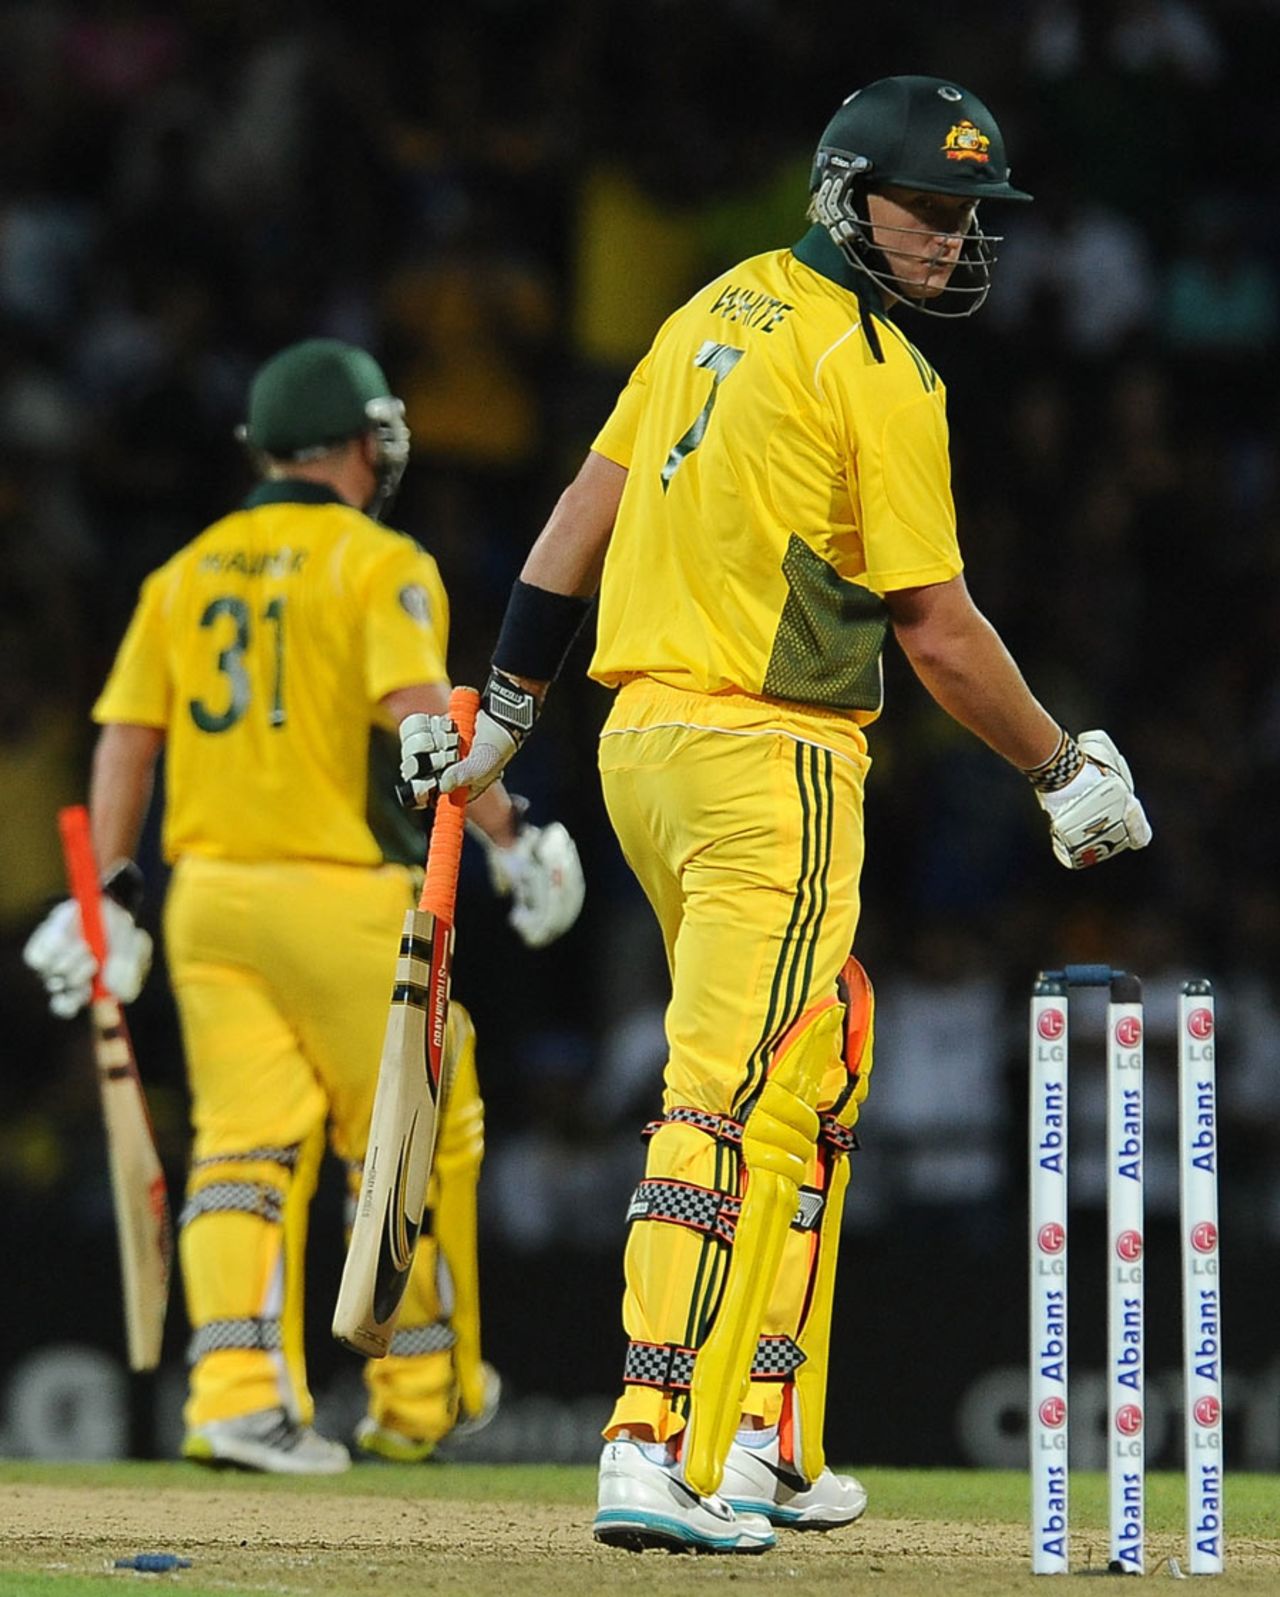 Cameron White is bowled for 7, Sri Lanka v Australia, 1st Twenty20, Pallekele, August 6, 2011